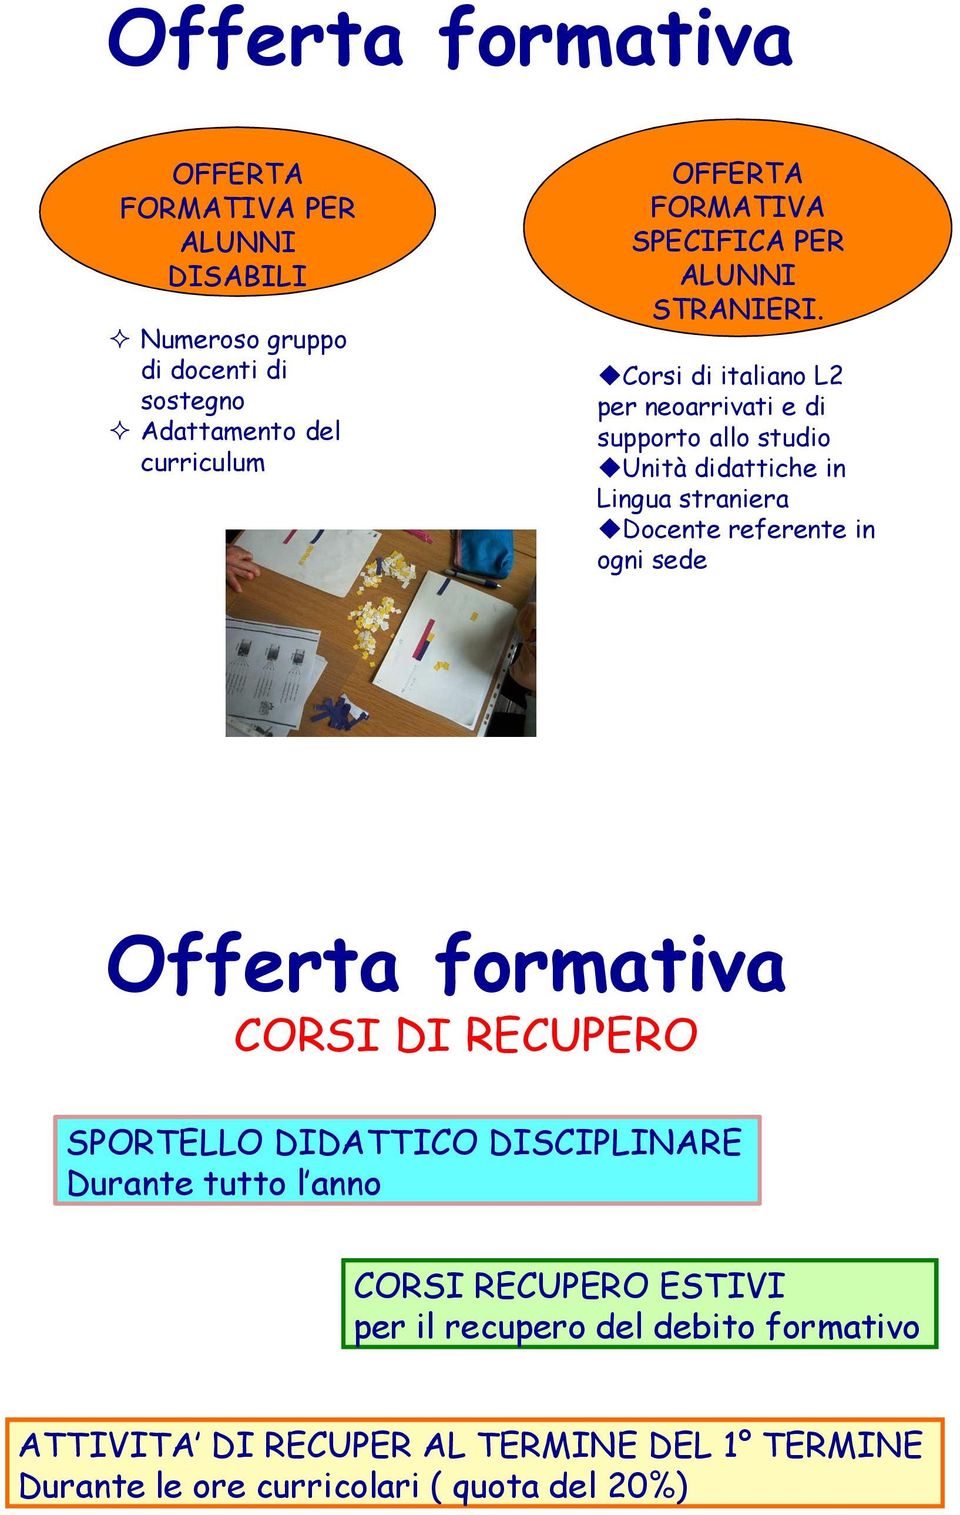 Corsi di italiano L2 per neoarrivati e di supporto allo studio Unità didattiche in Lingua straniera Docente referente in ogni sede